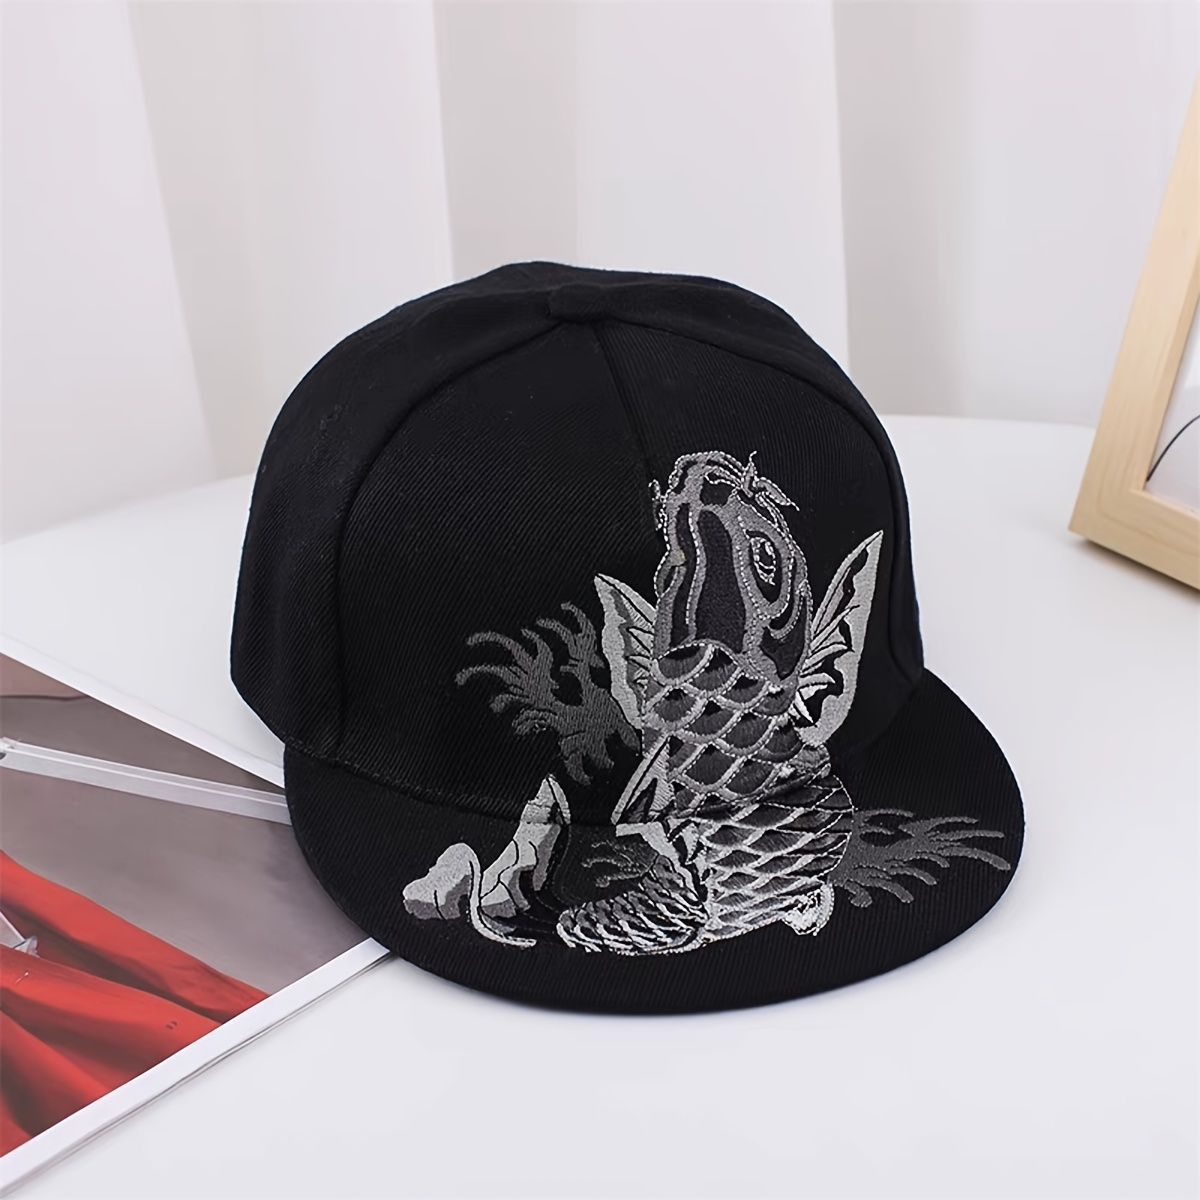 Sombrero Chino - Temu